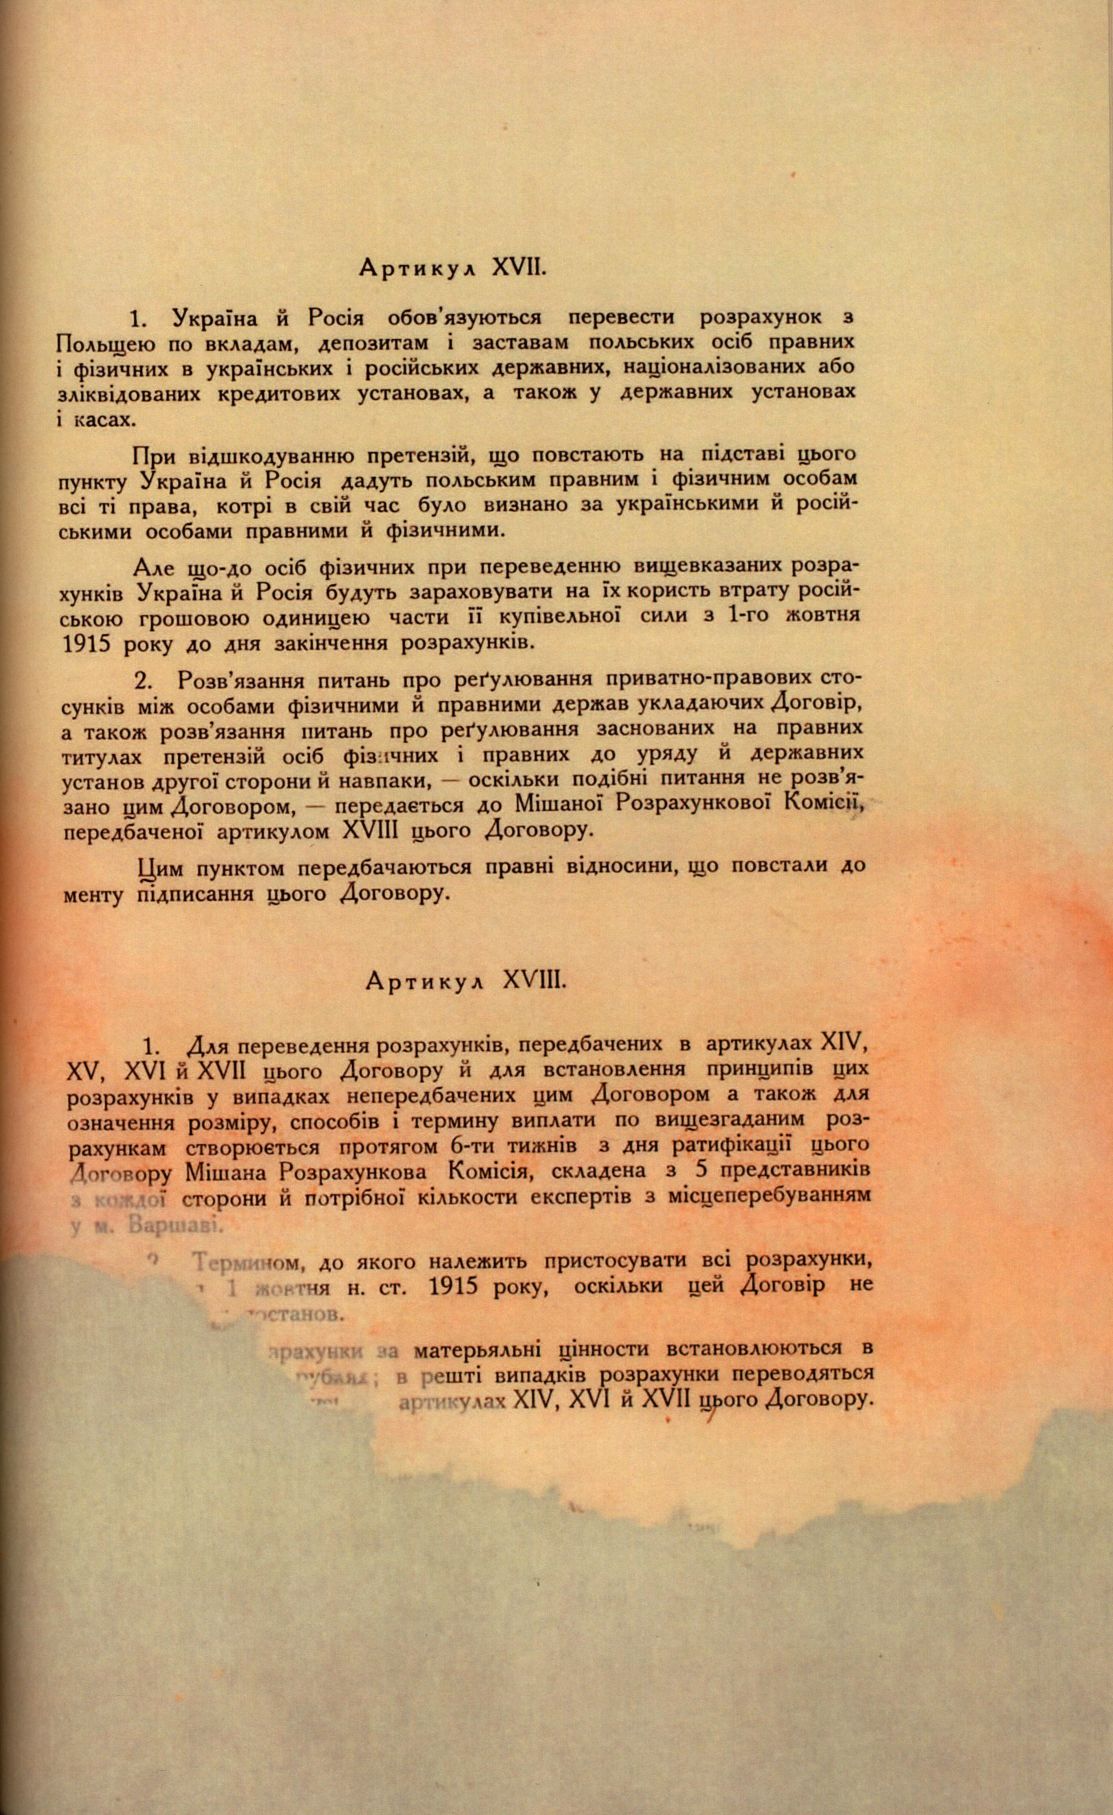 Traktat Pokoju między Polską a Rosją i Ukrainą podpisany w Rydze dnia 18 marca 1921 roku, s. 51, MSZ, sygn. 6739.